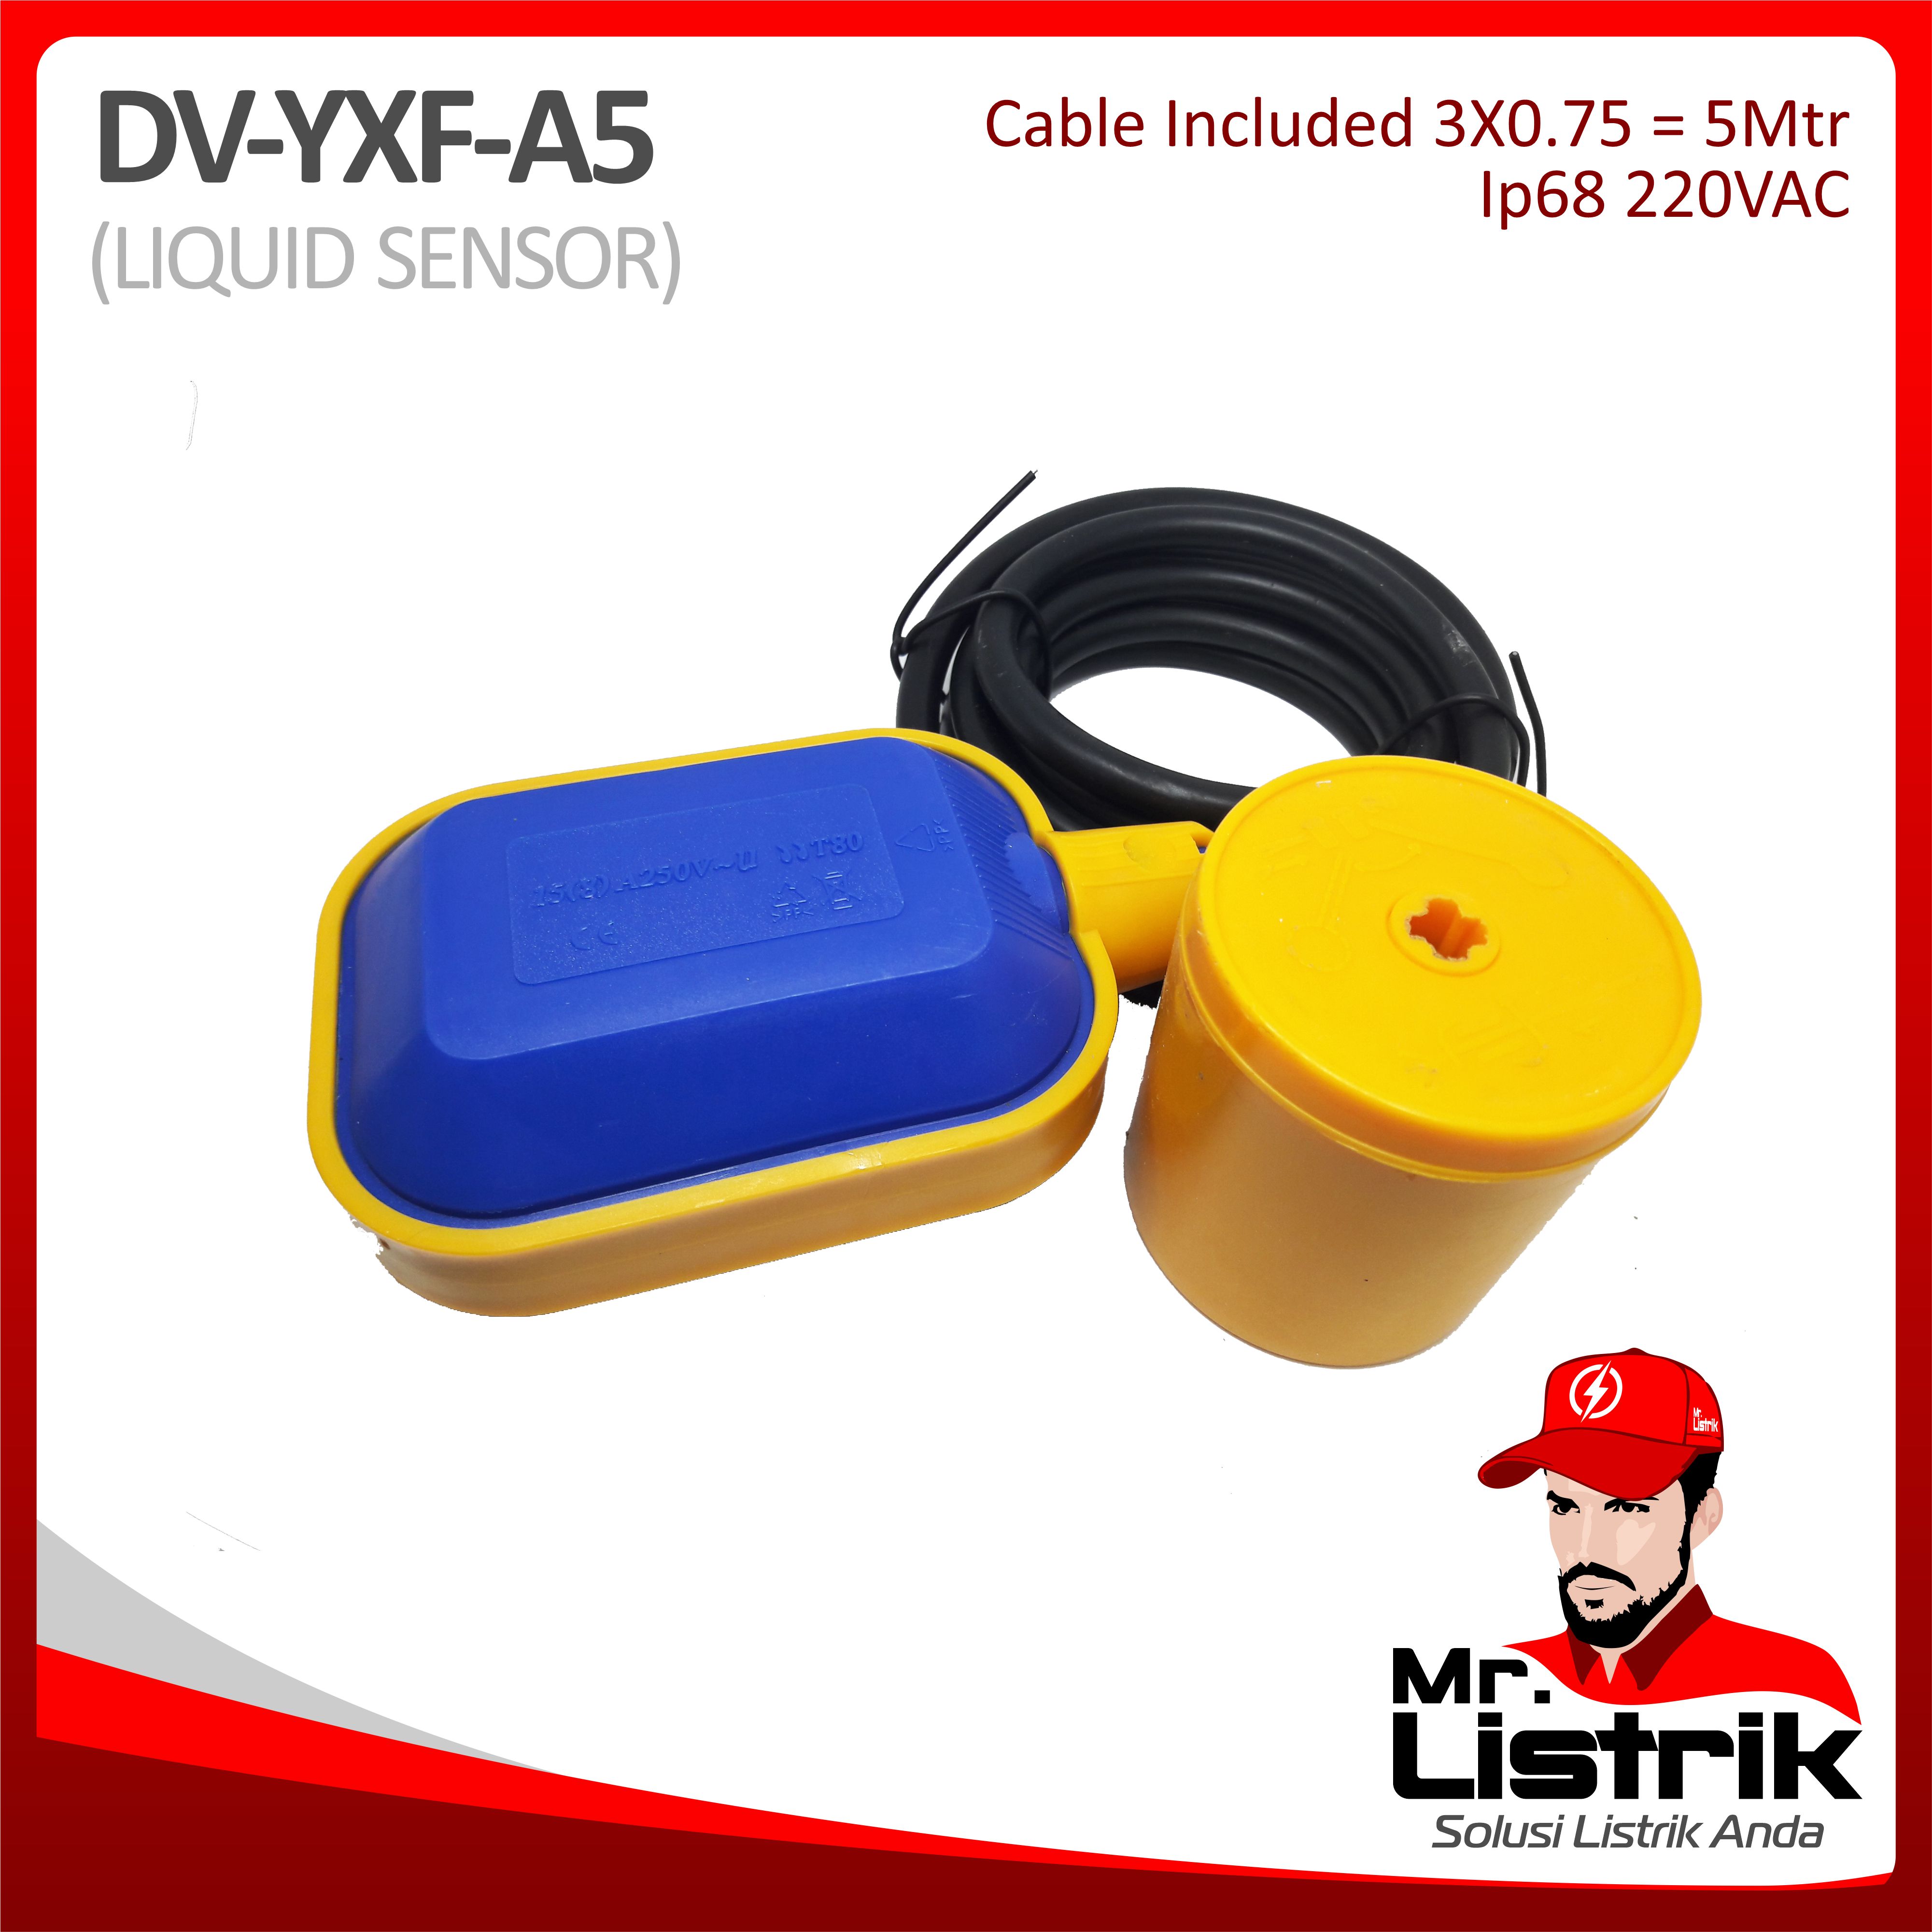 Liquid Sensor IP68 Cable 5 Meter DV YXF-A5